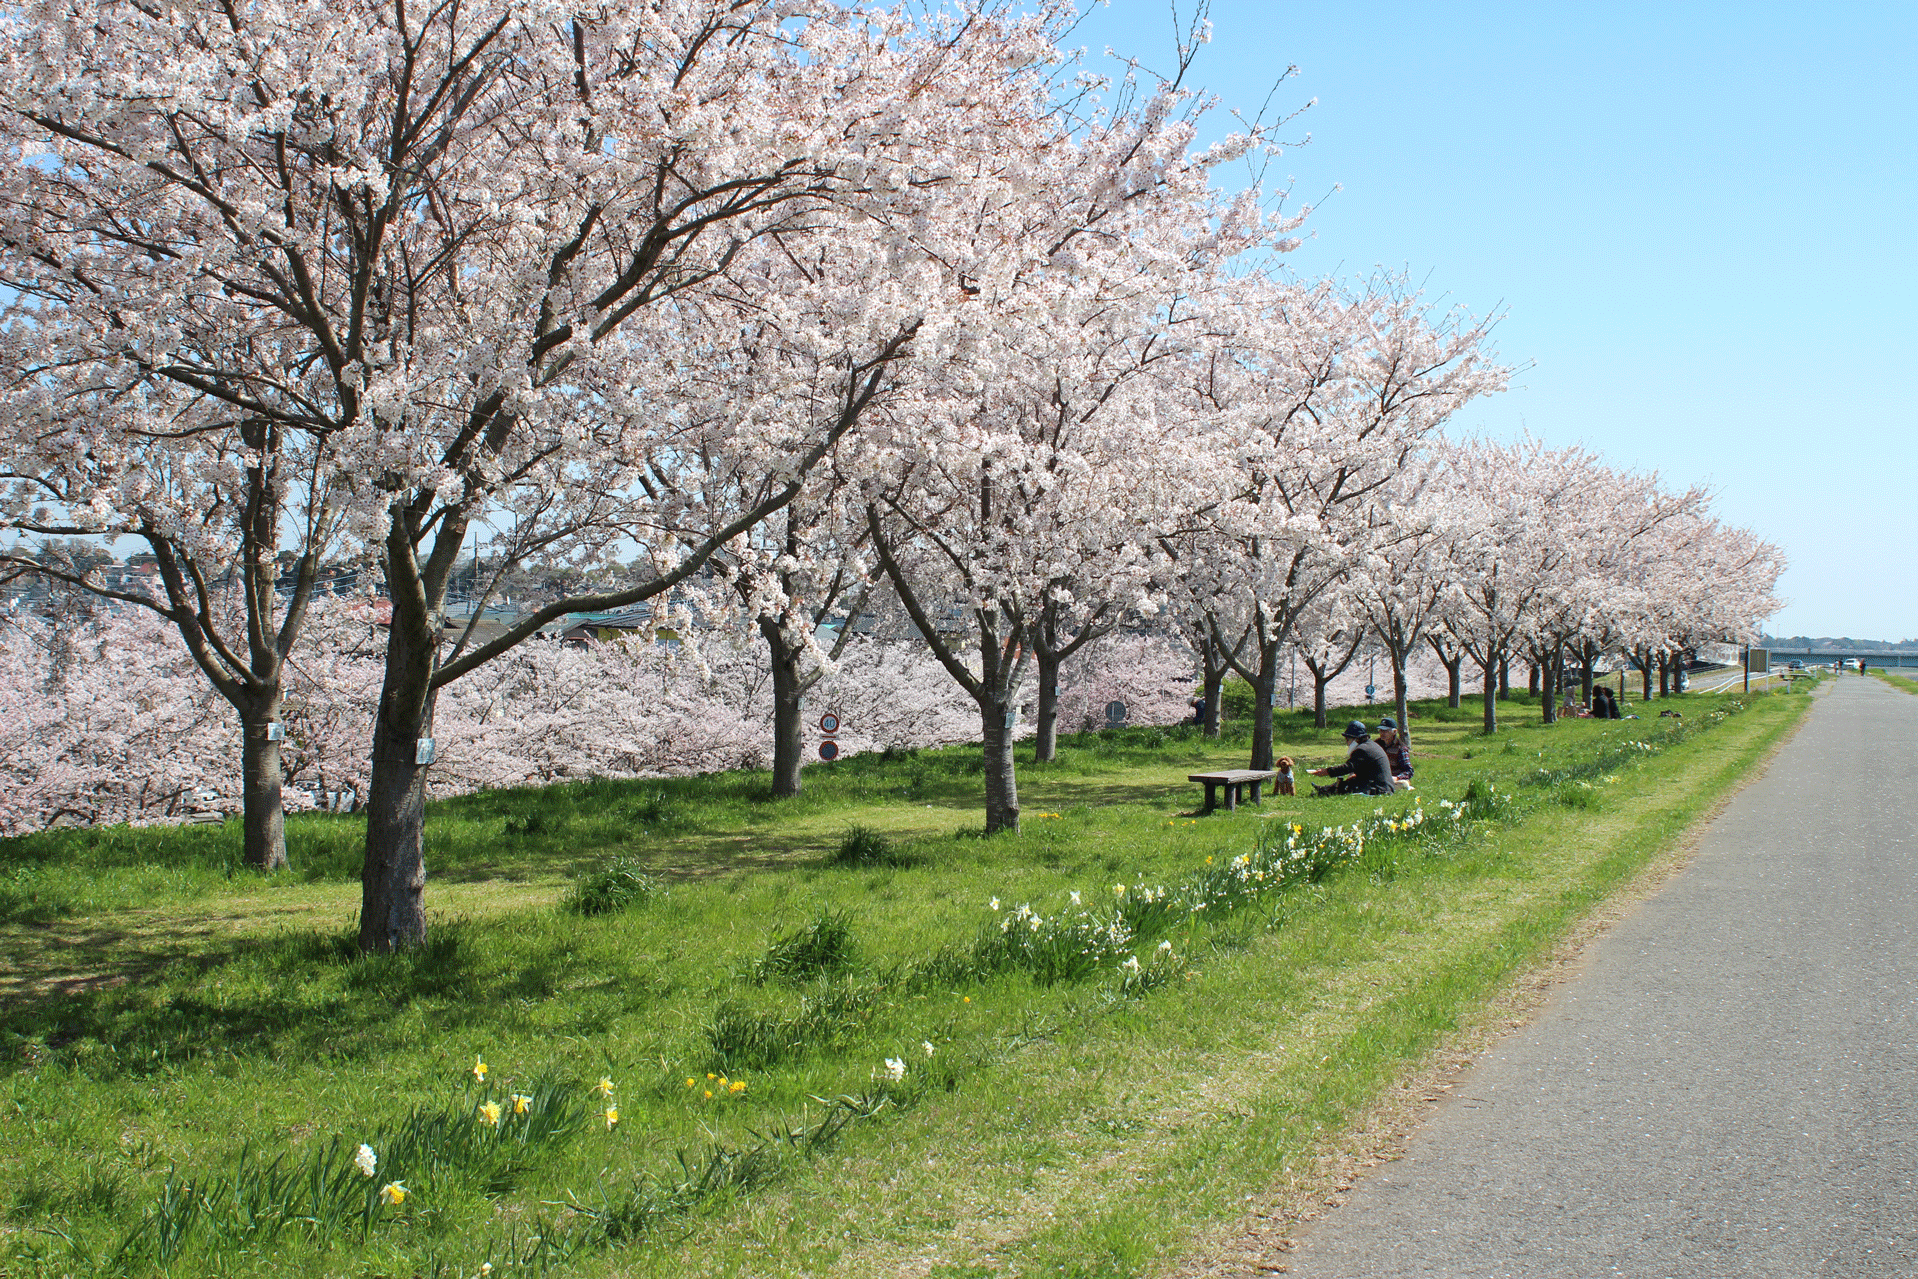 『『『『桜づつみＴＯＰ』の画像』の画像』の画像』の画像